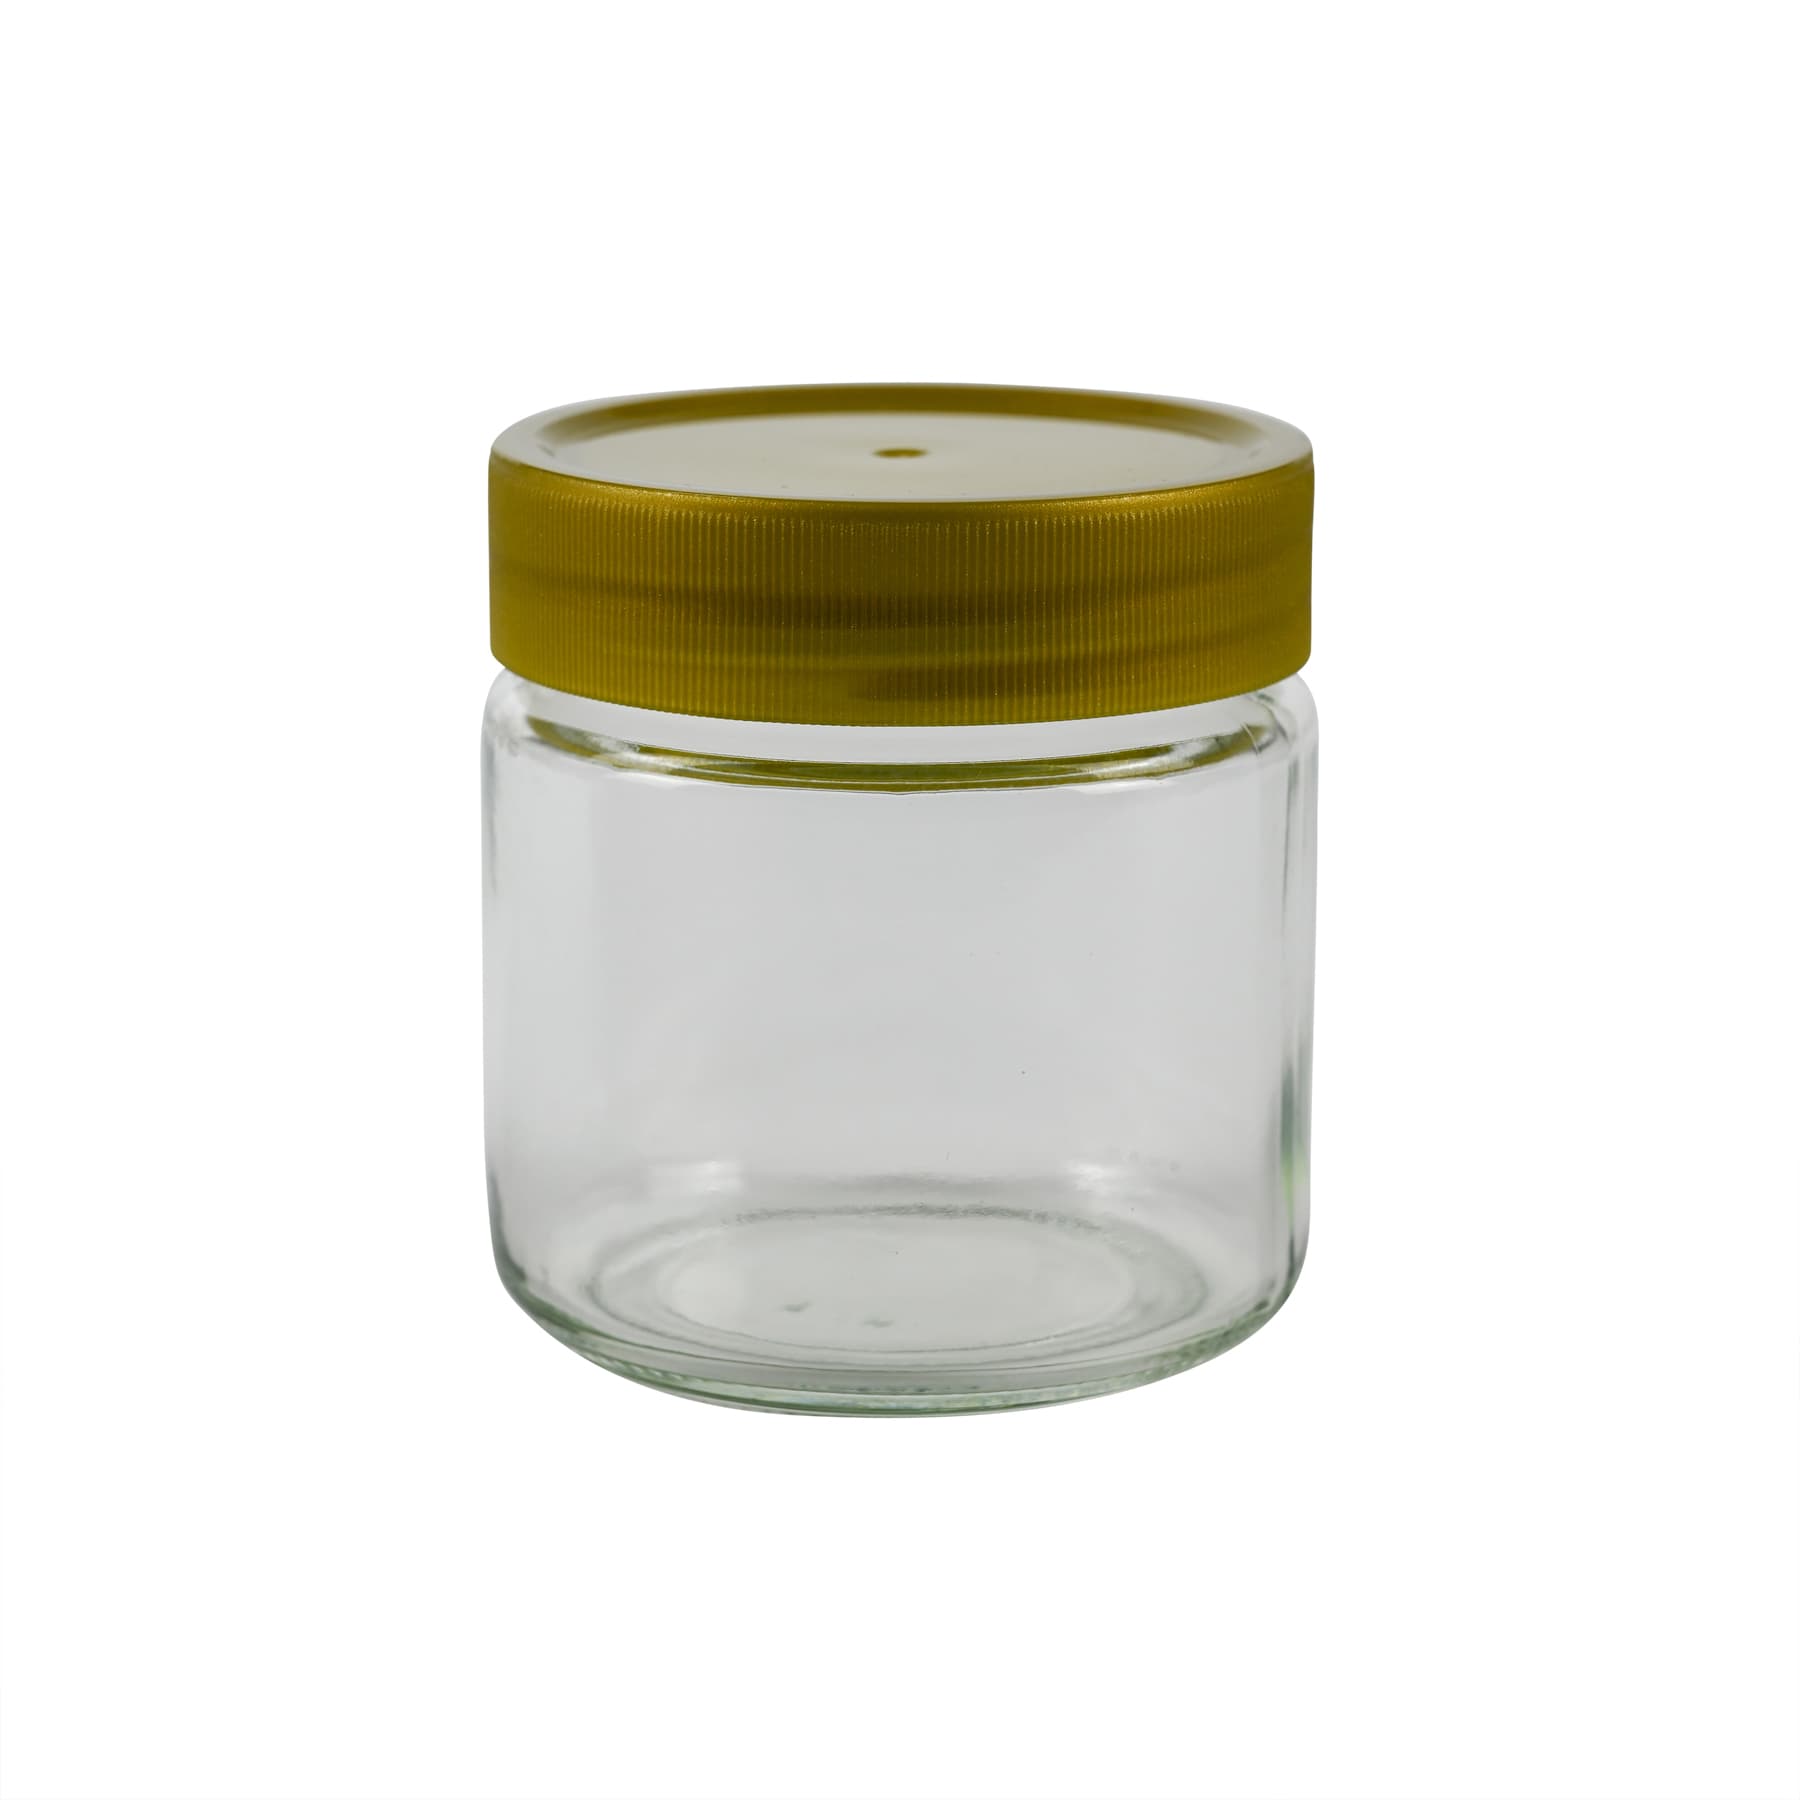 Rundglas 250 g mit Schraubdeckel 68 mm Kunststoff, im Karton nur Selbstabholung, Weck Nr. Artikel 641